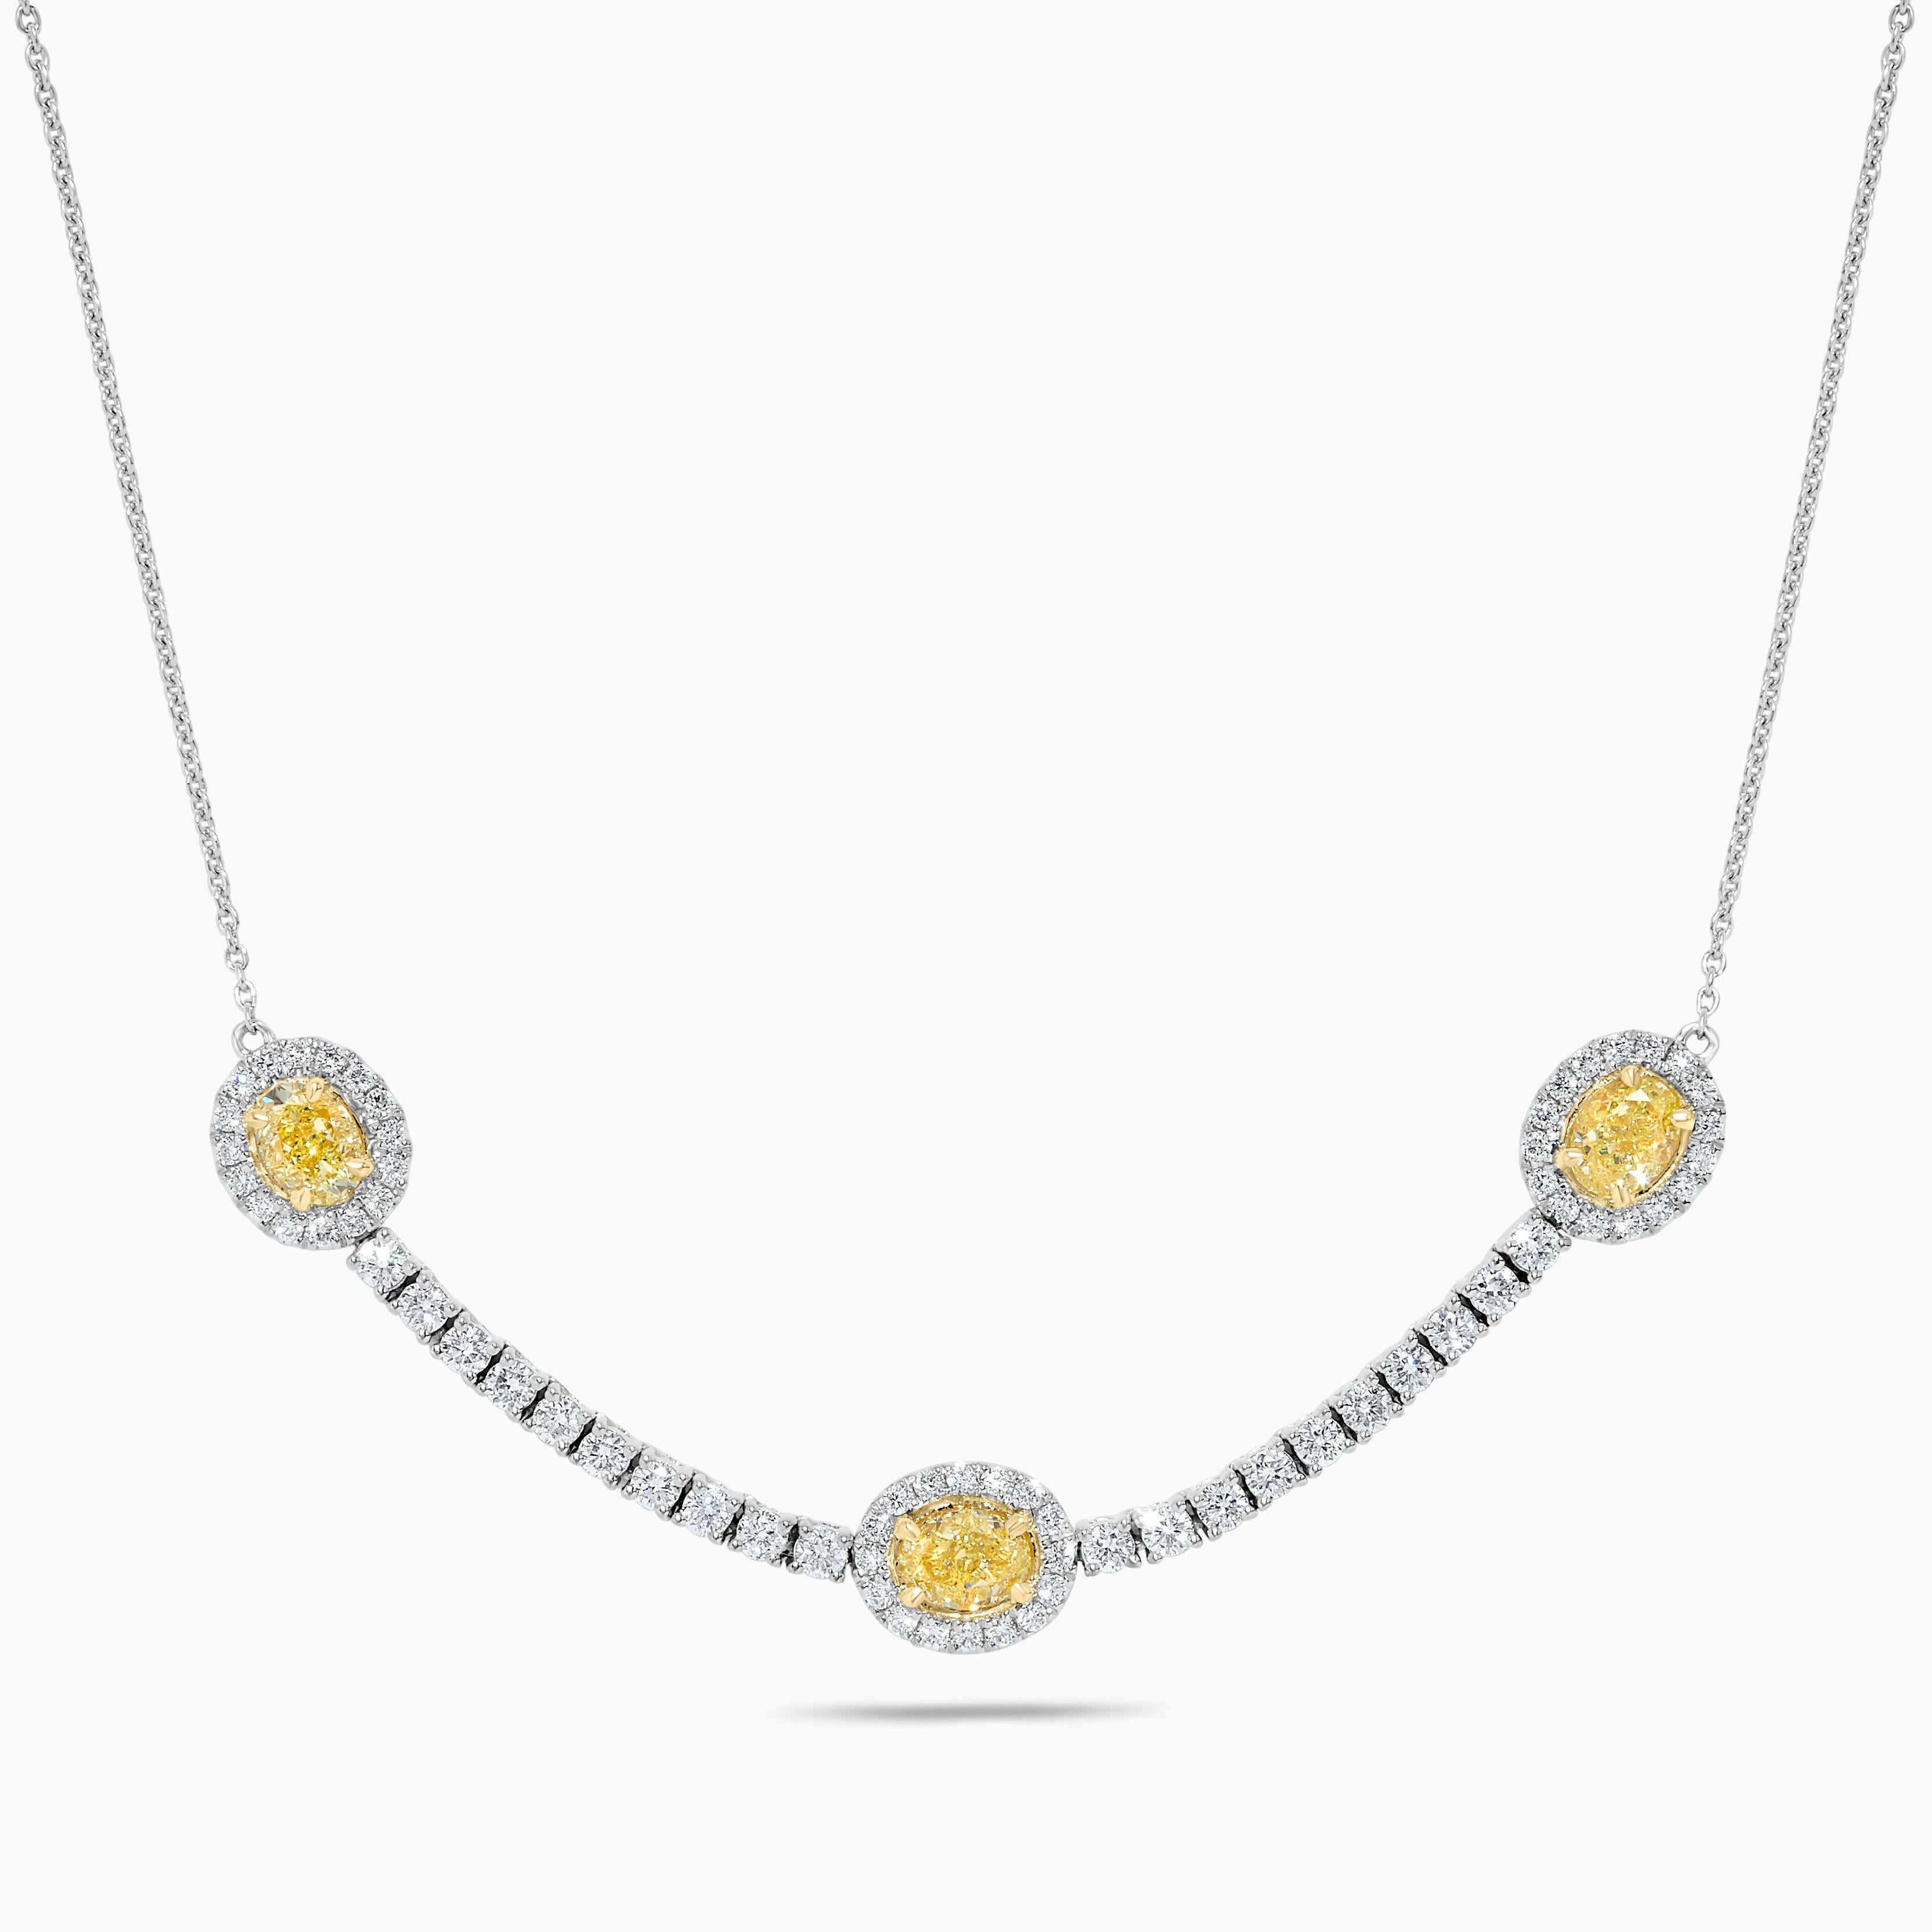 Das klassische Diamant-Halsband von RareGemWorld. Montiert in einer schönen Fassung aus 18K Gelb- und Weißgold mit einem natürlichen gelben Diamanten im Ovalschliff. Der gelbe Diamant ist umgeben von kleinen runden weißen Naturdiamanten sowie von